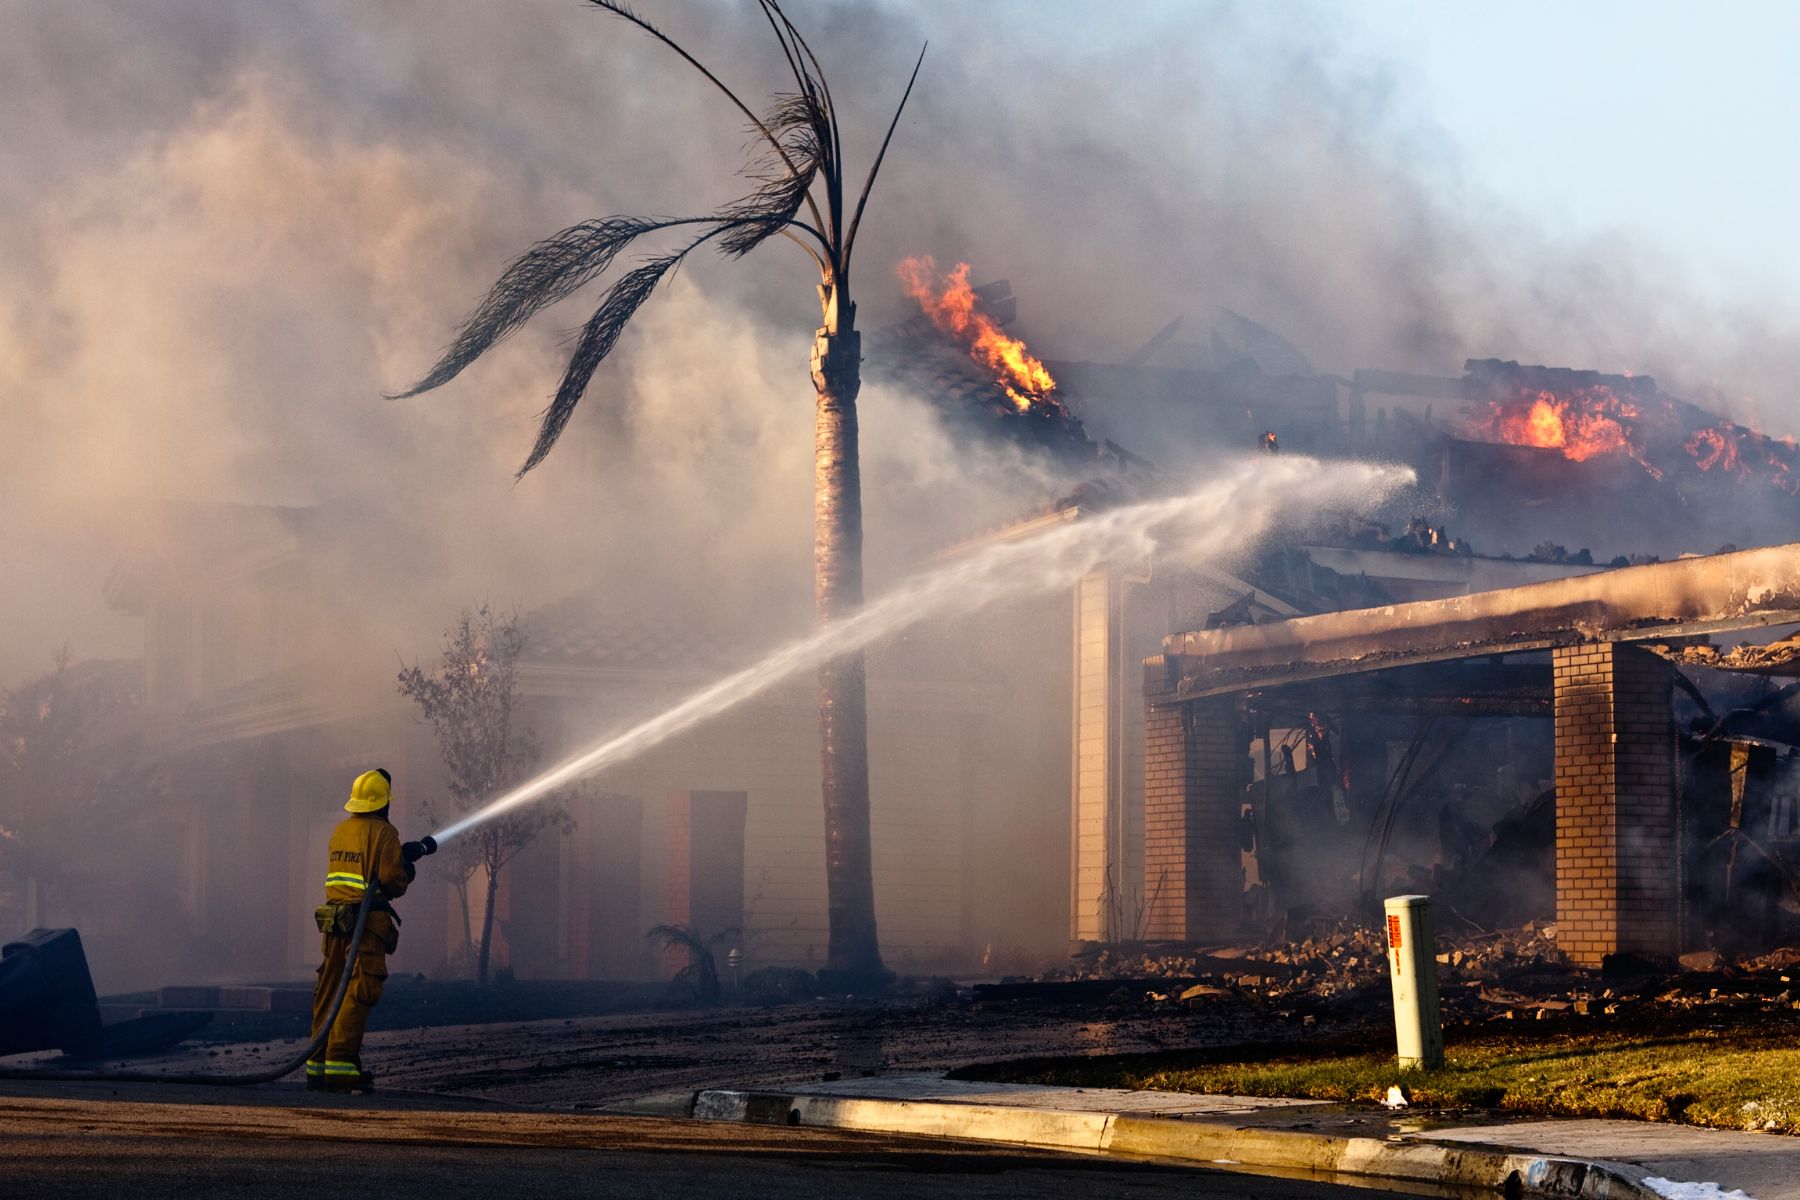 A fireman fights a house fire